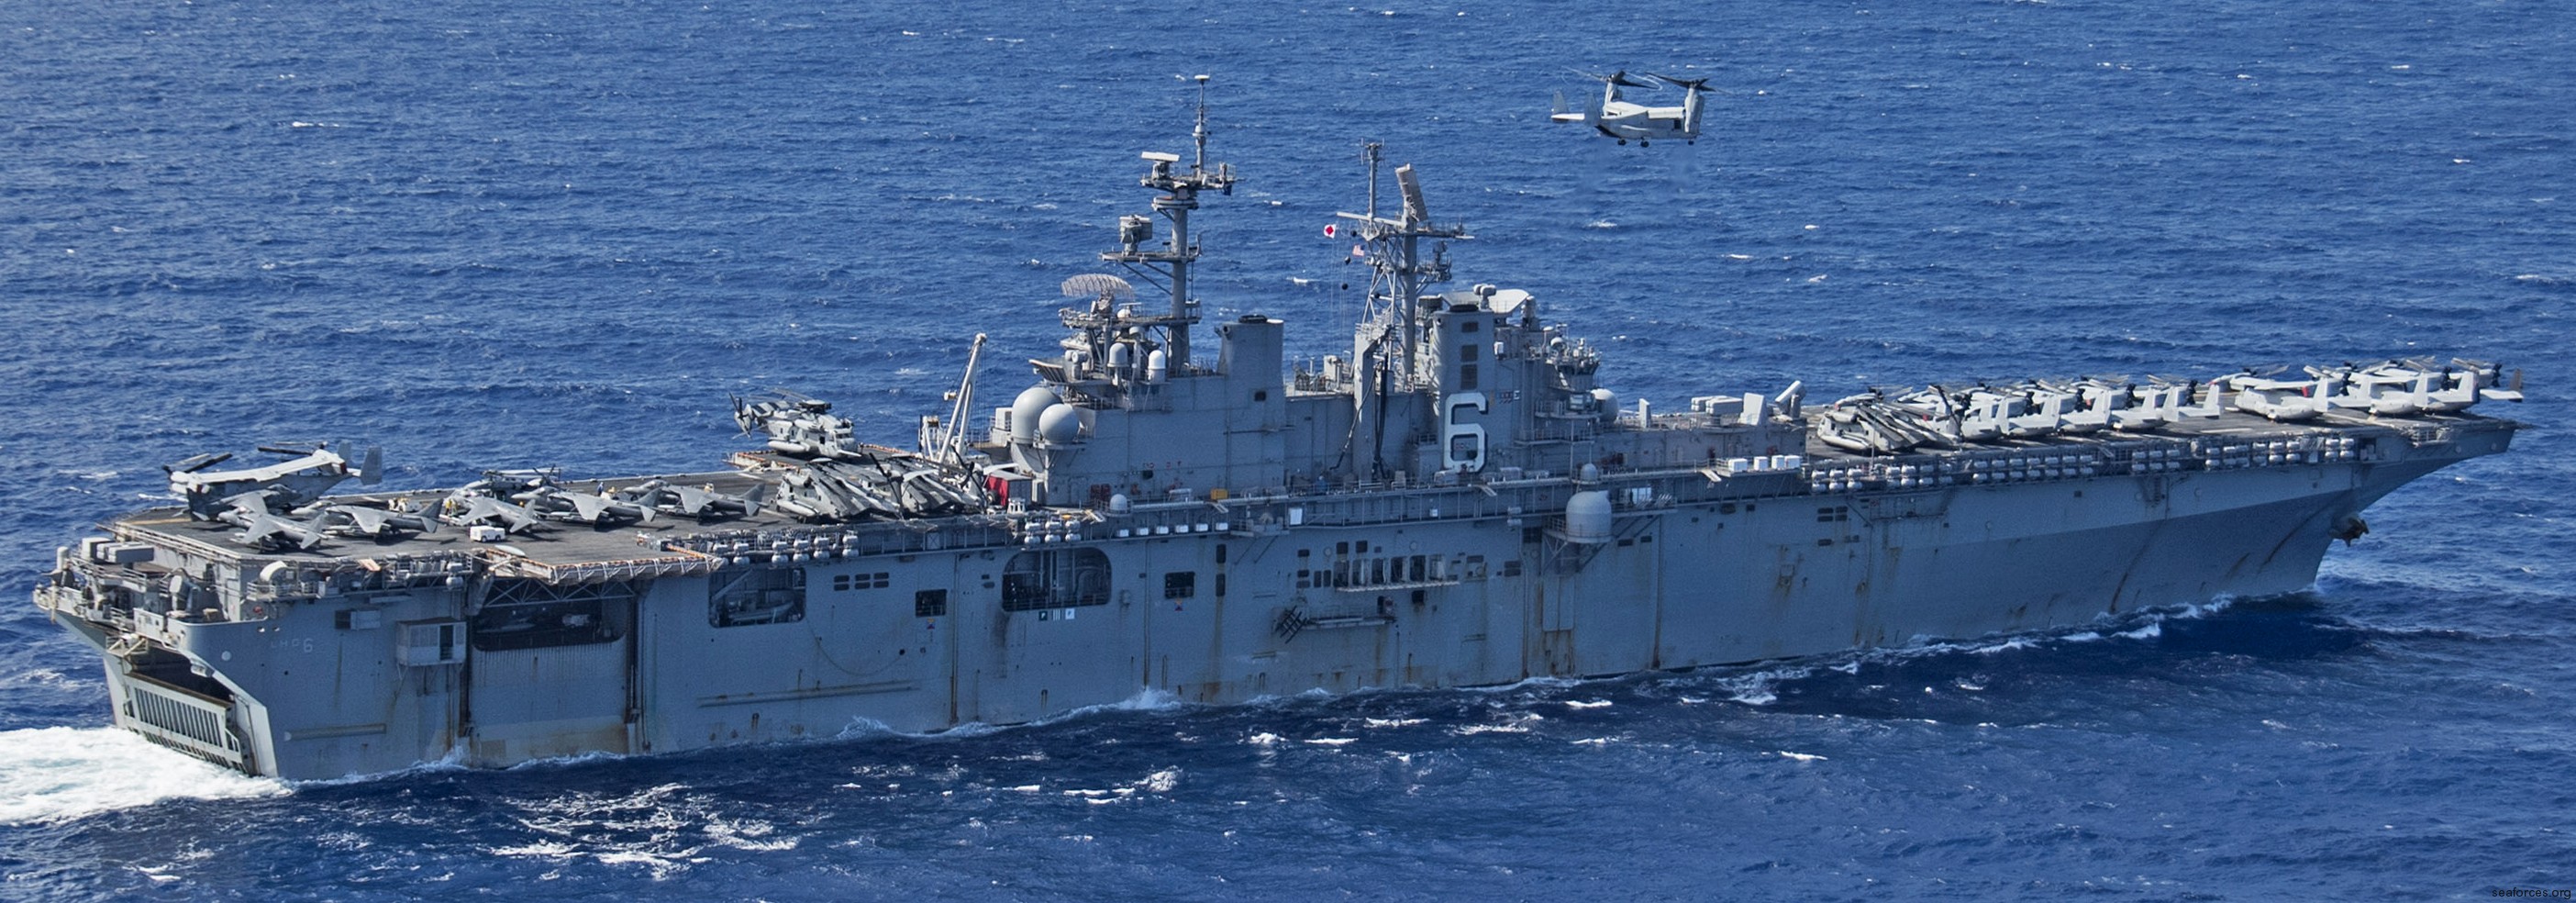 lhd-6 uss bonhomme richard amphibious assault ship landing helicopter dock wasp class 79